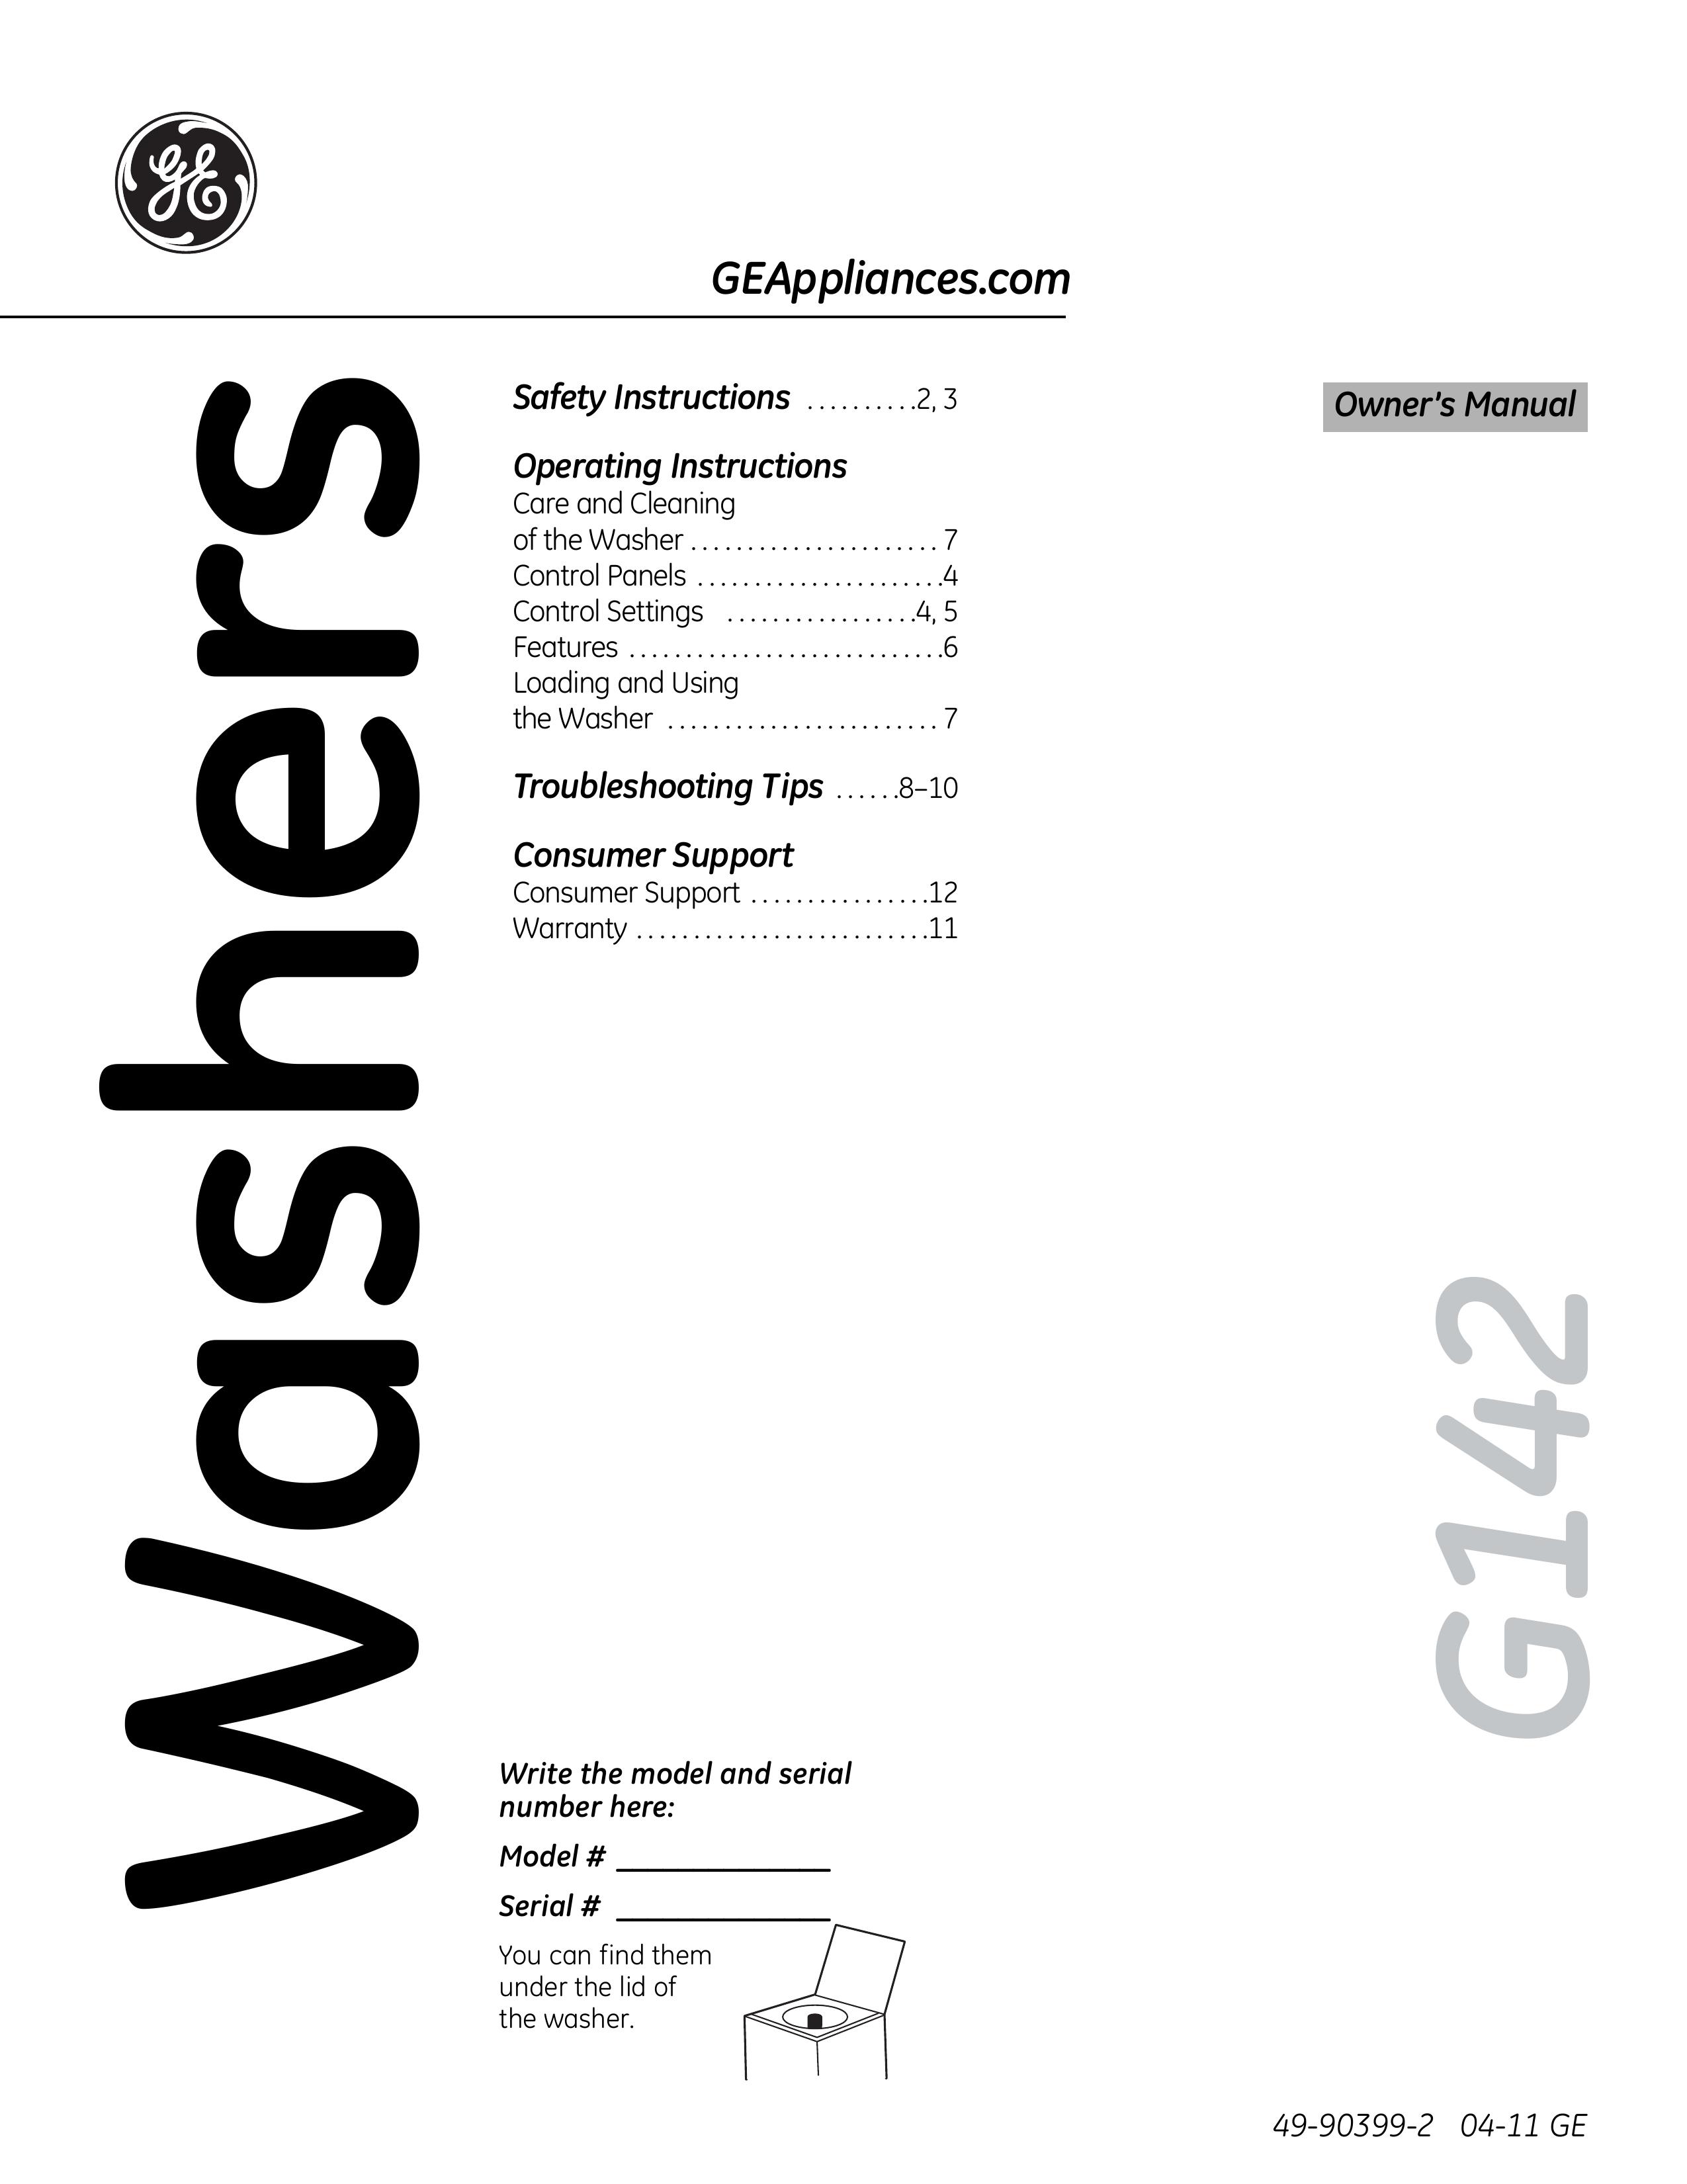 GE G142 Washer User Manual